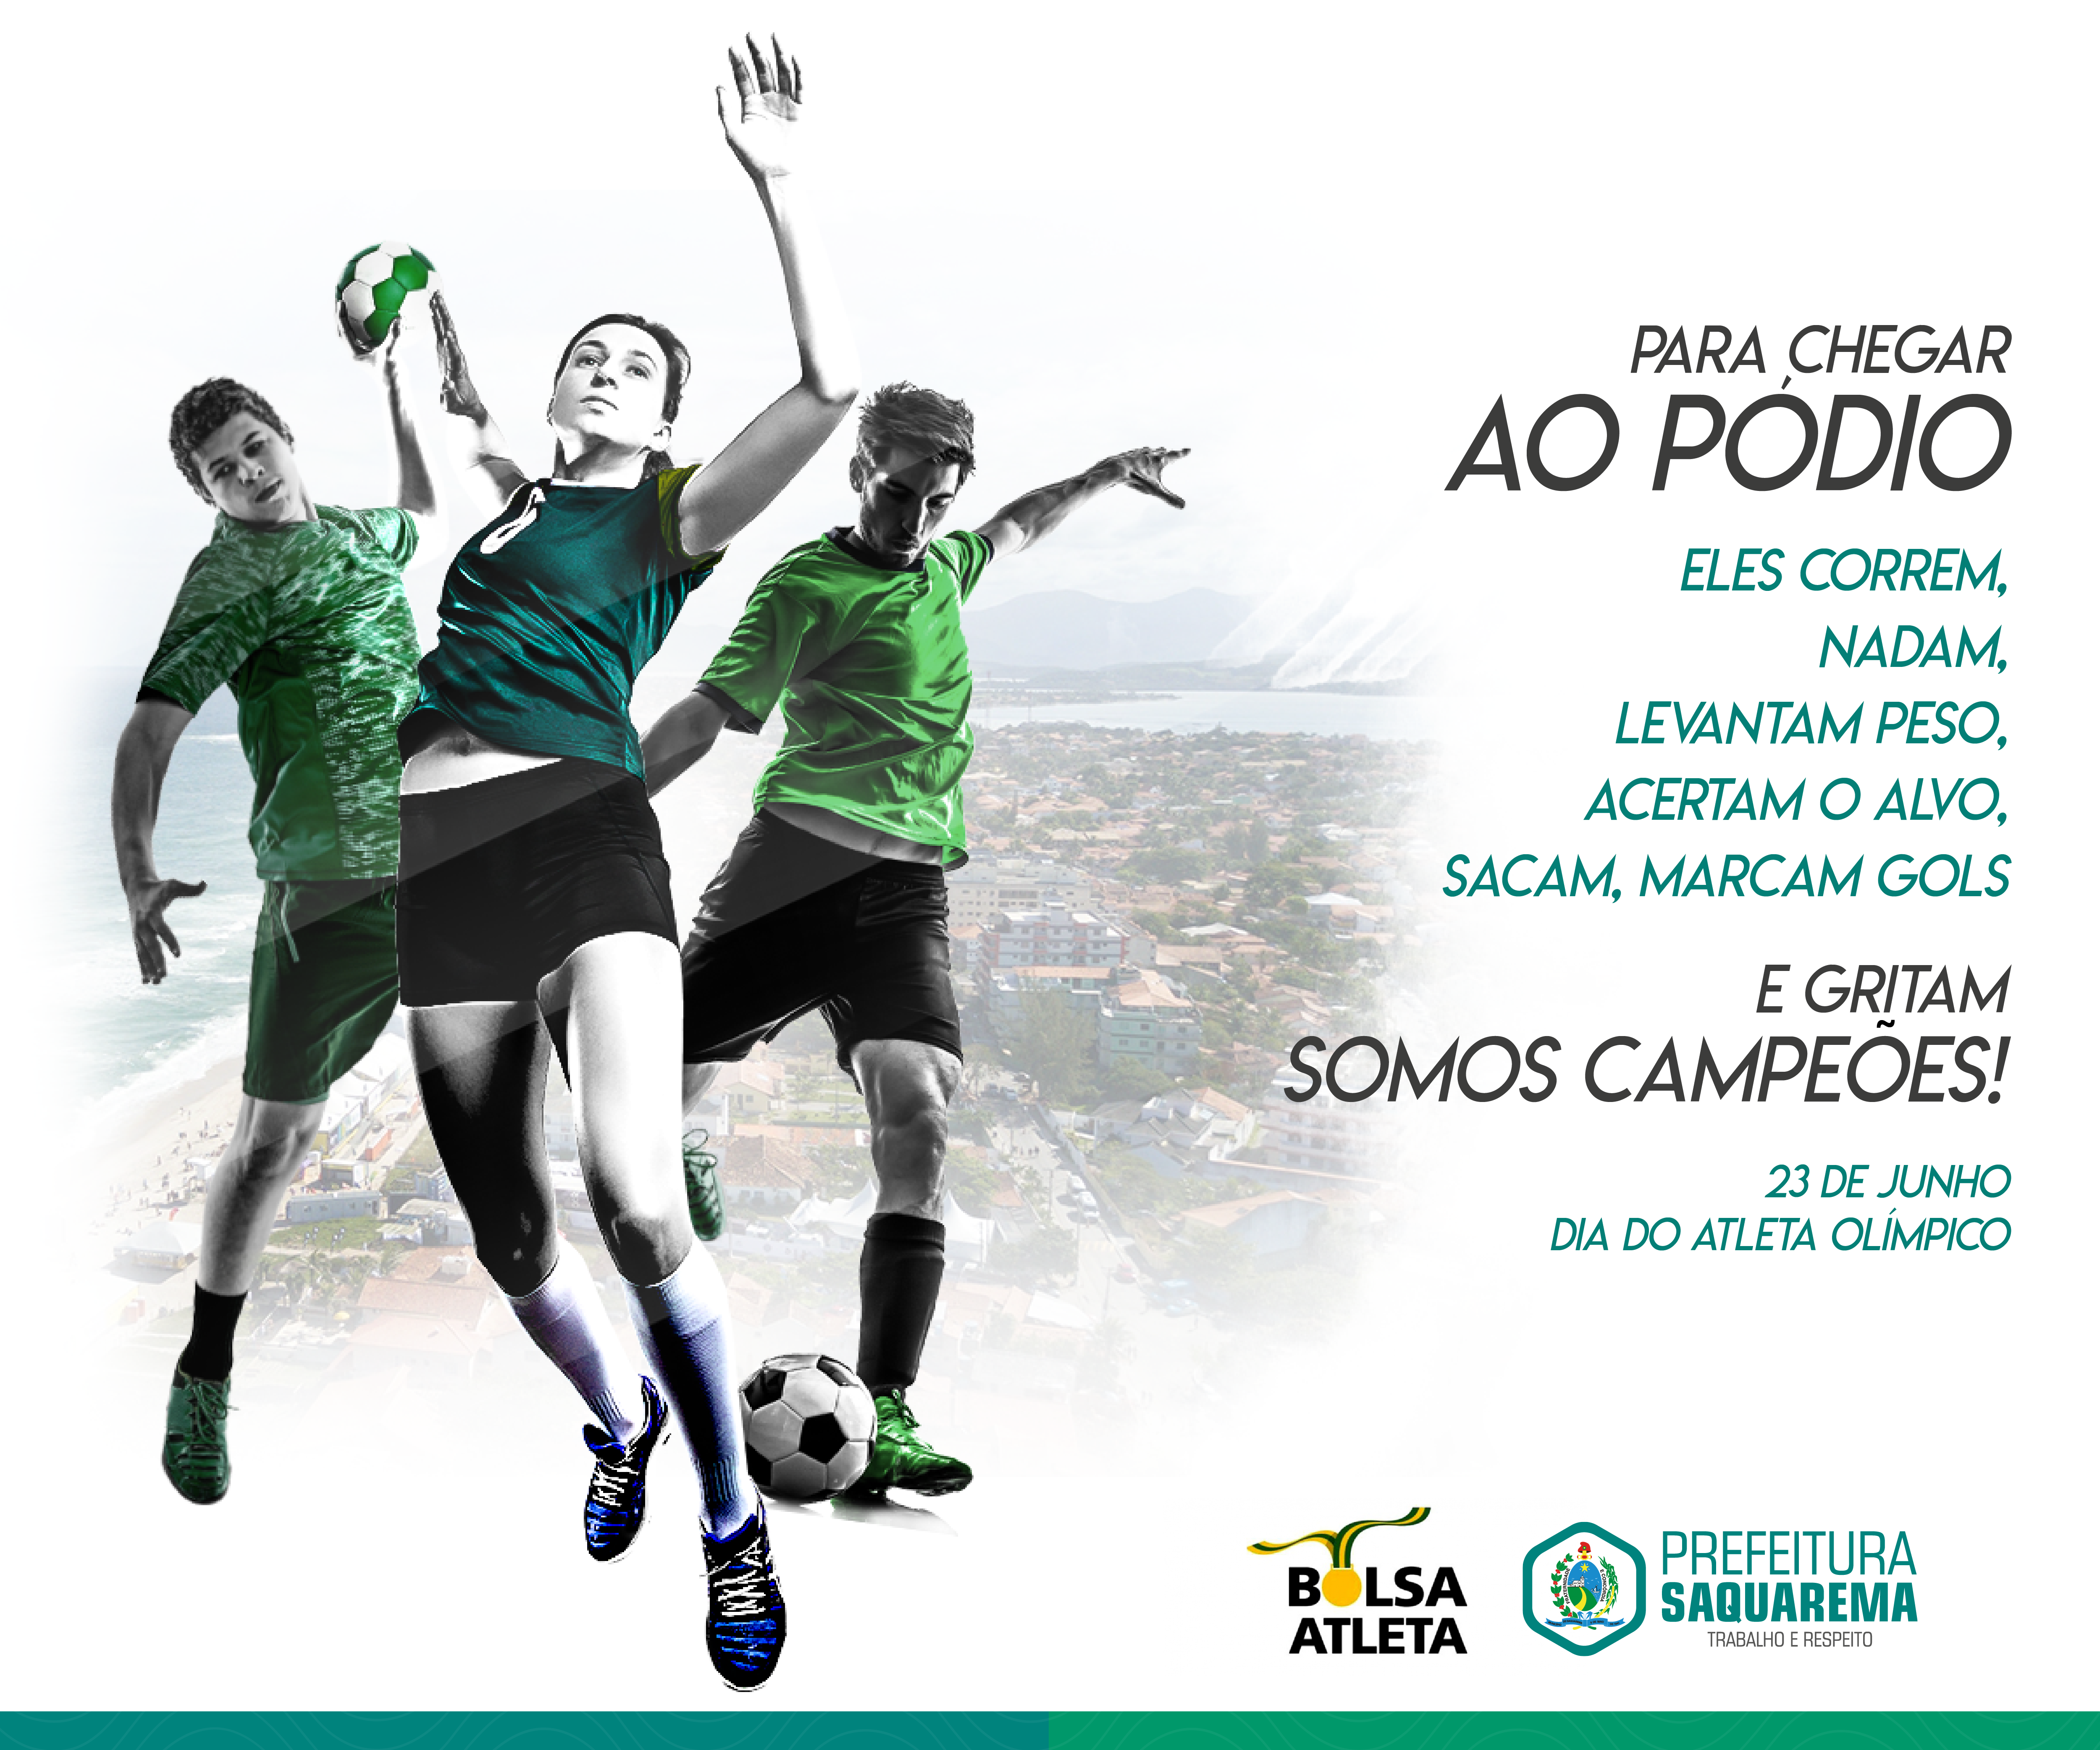 HOMENAGEM: Dia do Atleta Olímpico - Prefeitura de Saquarema